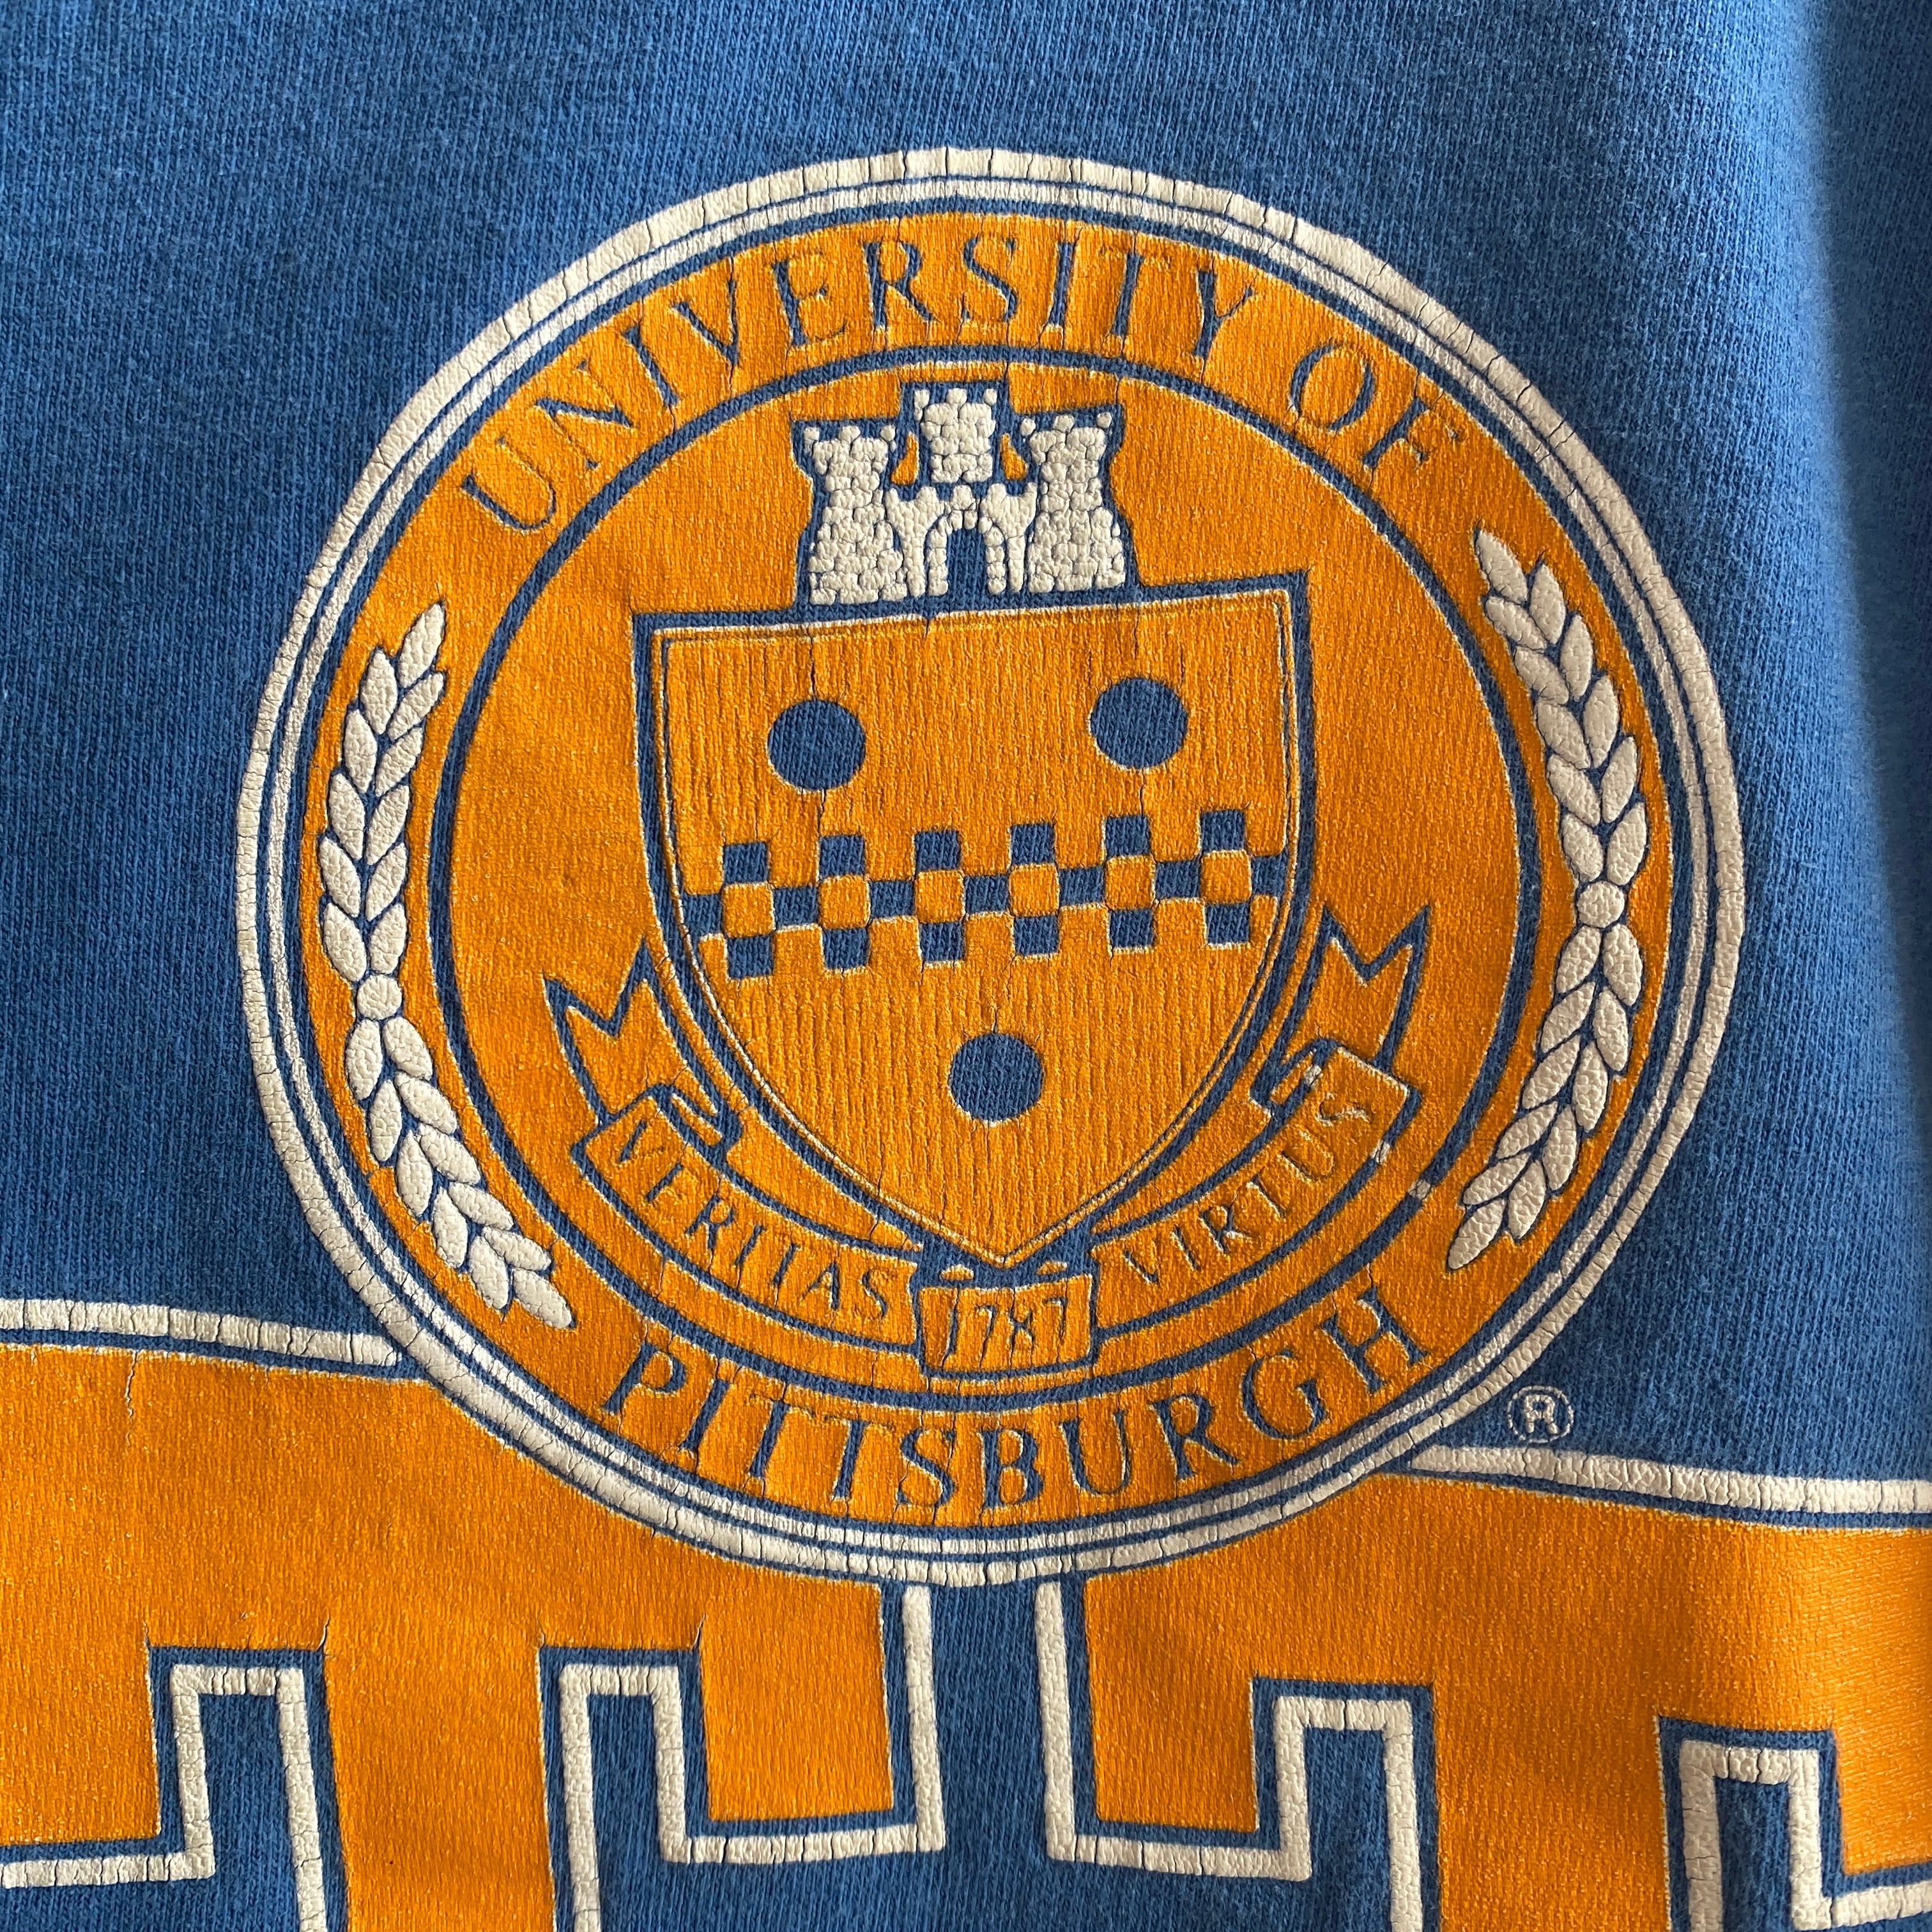 Université de Pittsburg des années 1980/90 - Haut court en coton délavé Pitt Panthers